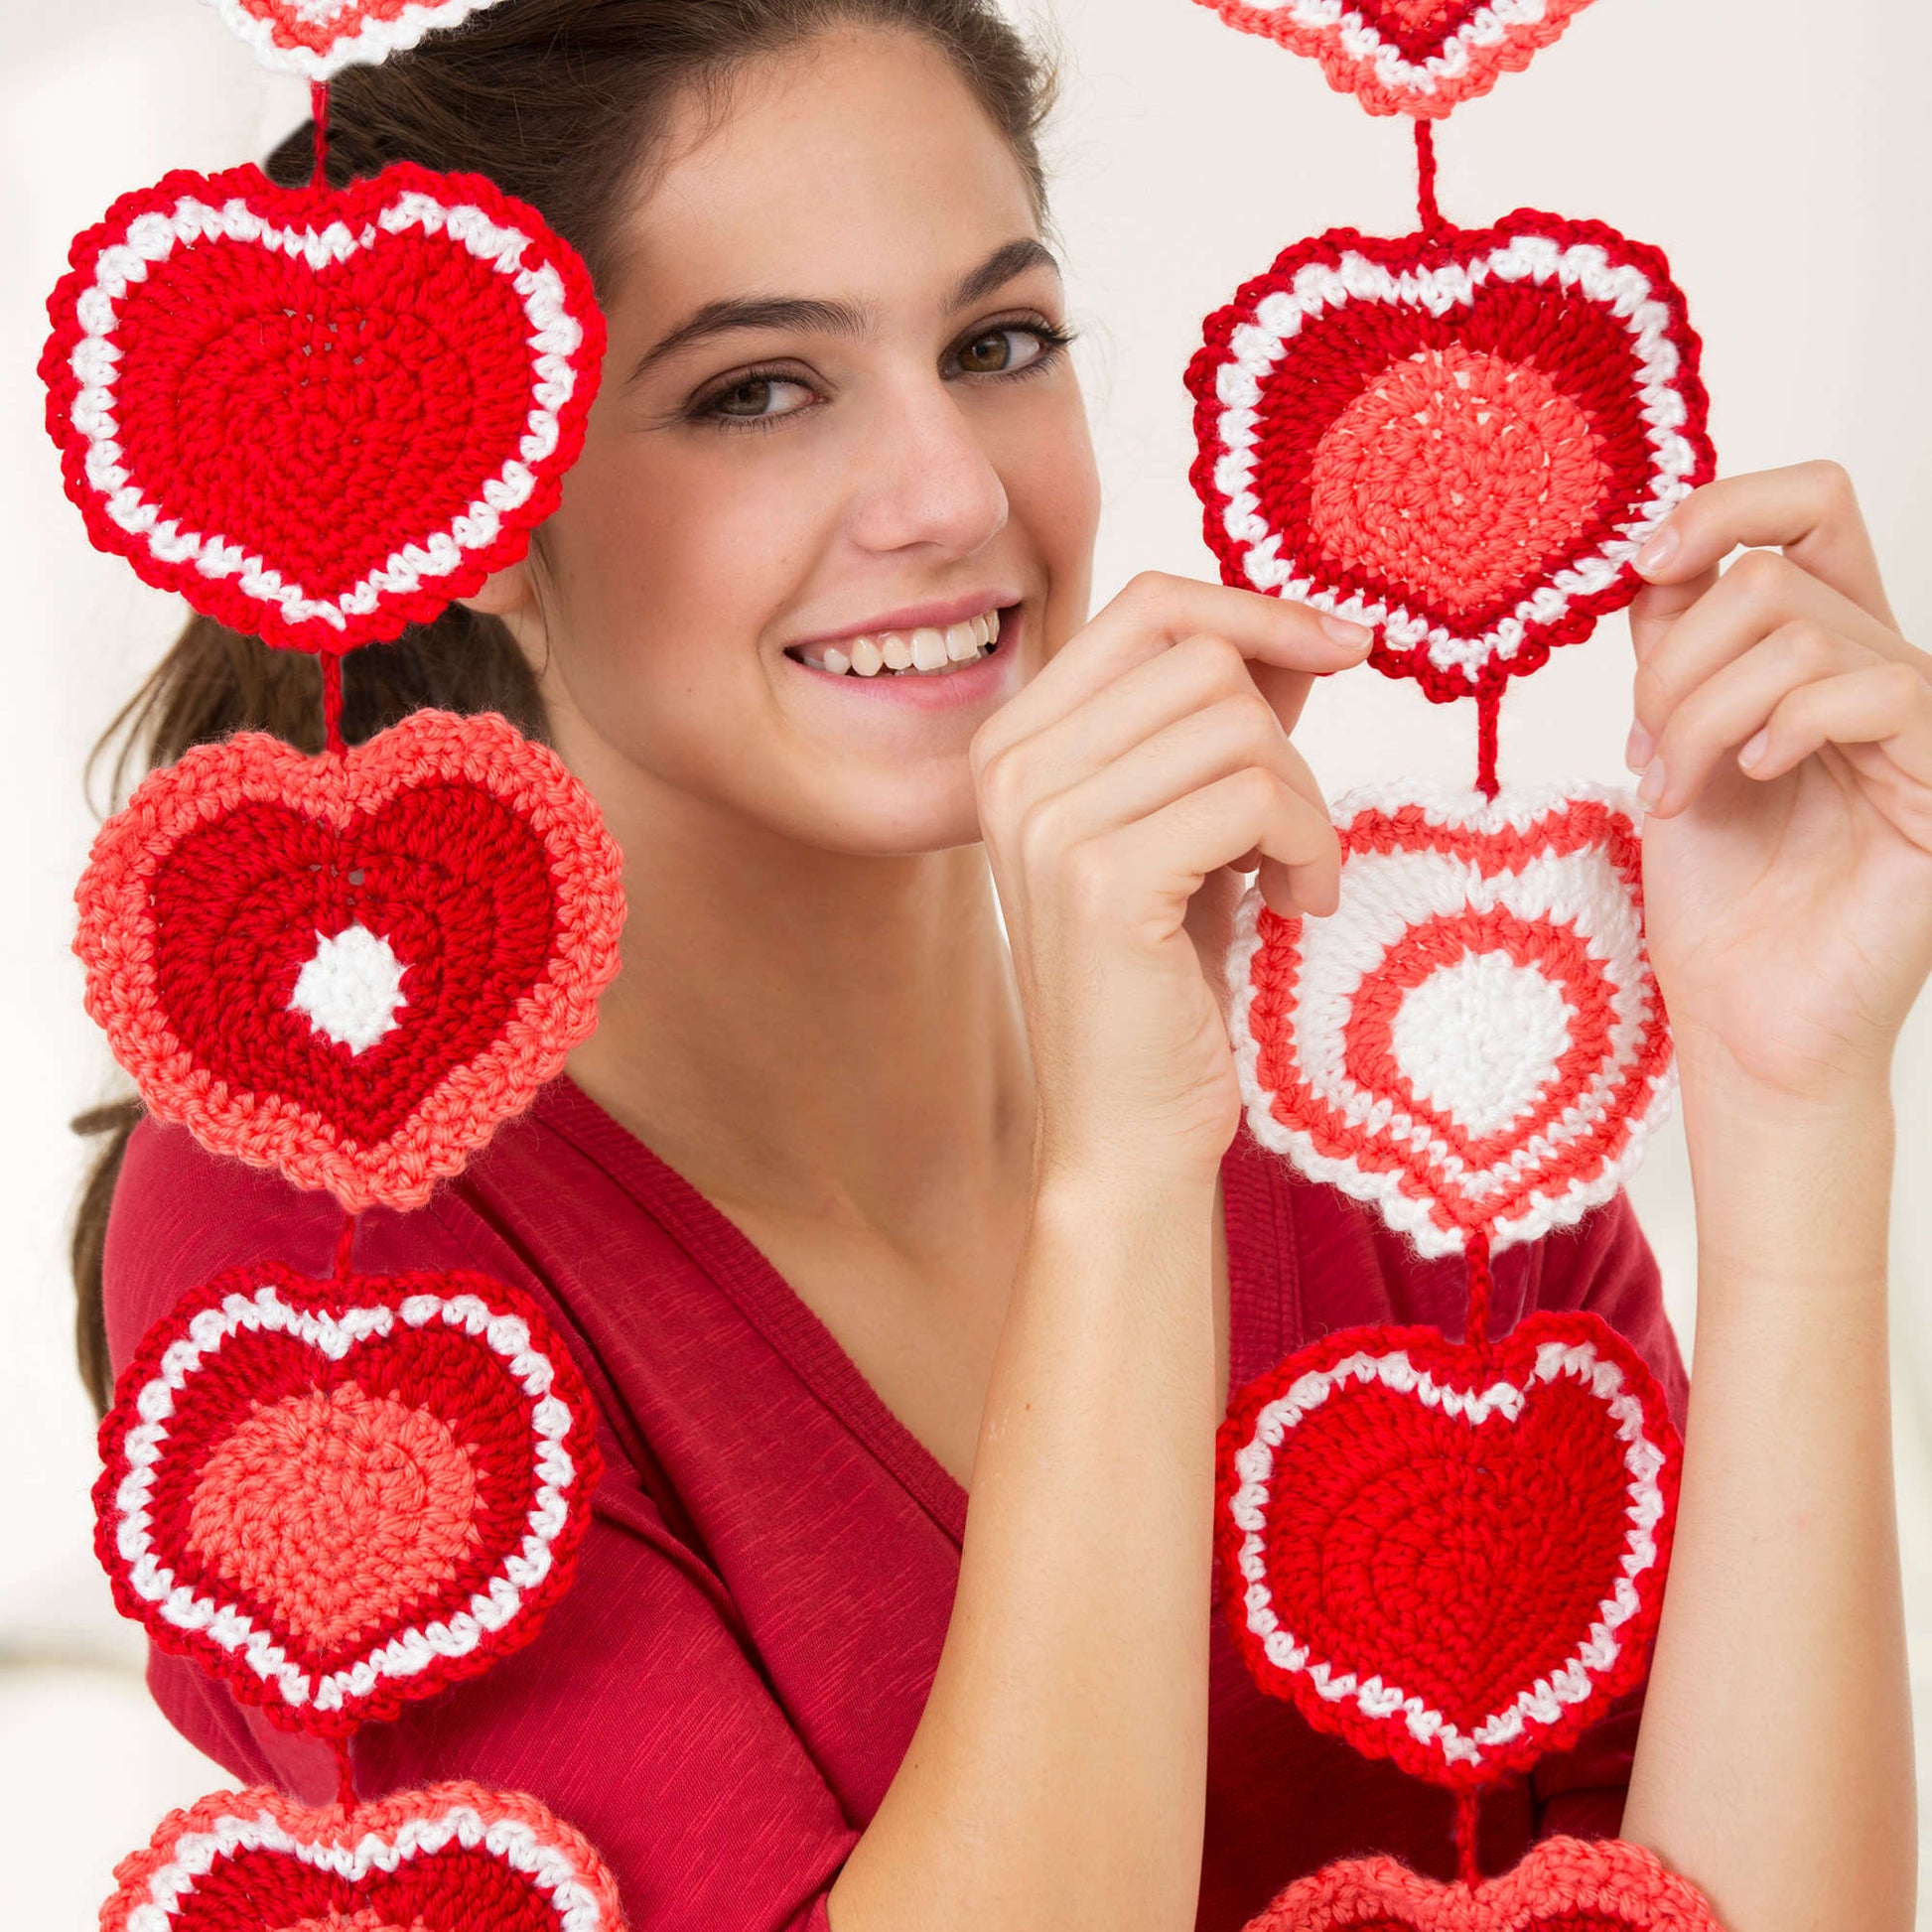 Free Red Heart Heart Strings Garland Crochet Pattern